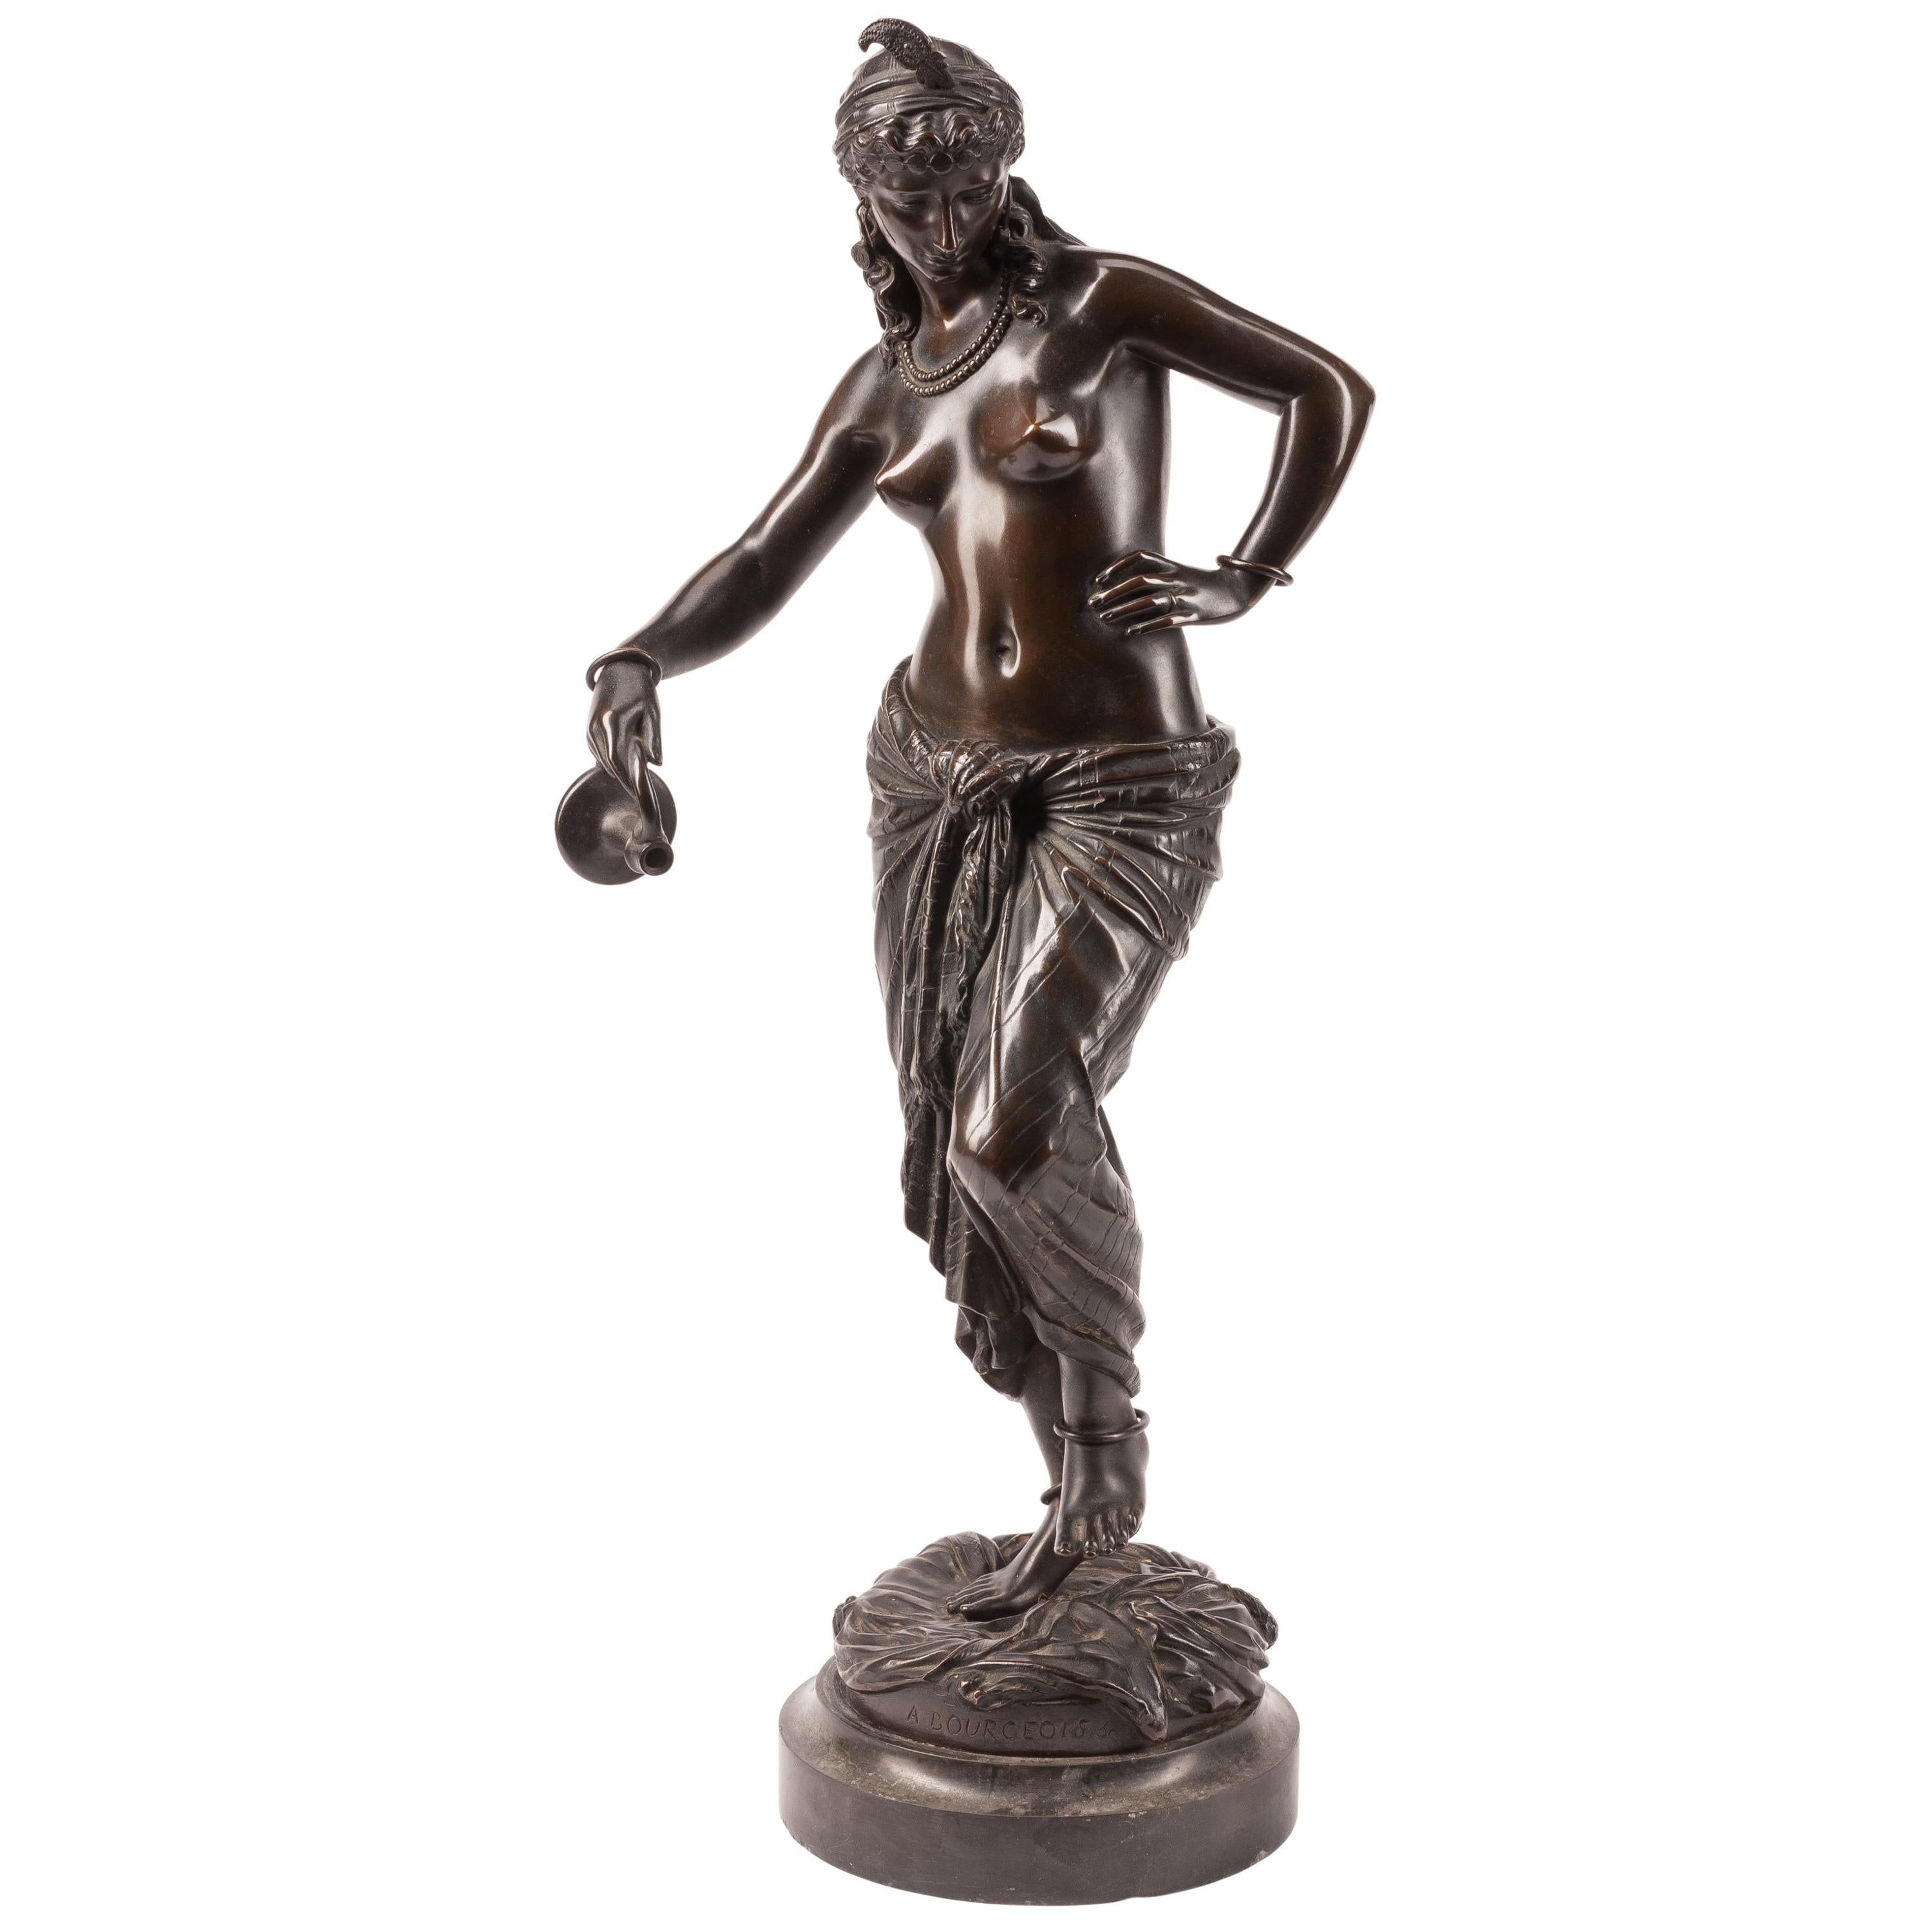 Die auf einem runden Sockel stehende Odaliske stellt eine halbnackte junge Frau in einem weiten Rock dar und ist mit dem Namen des Künstlers "A BOURGEOIS" beschriftet.

Schöpfer: Charles Arthur Bourgeois (1838-1886)
Herkunft: Französisch
Abmessung: